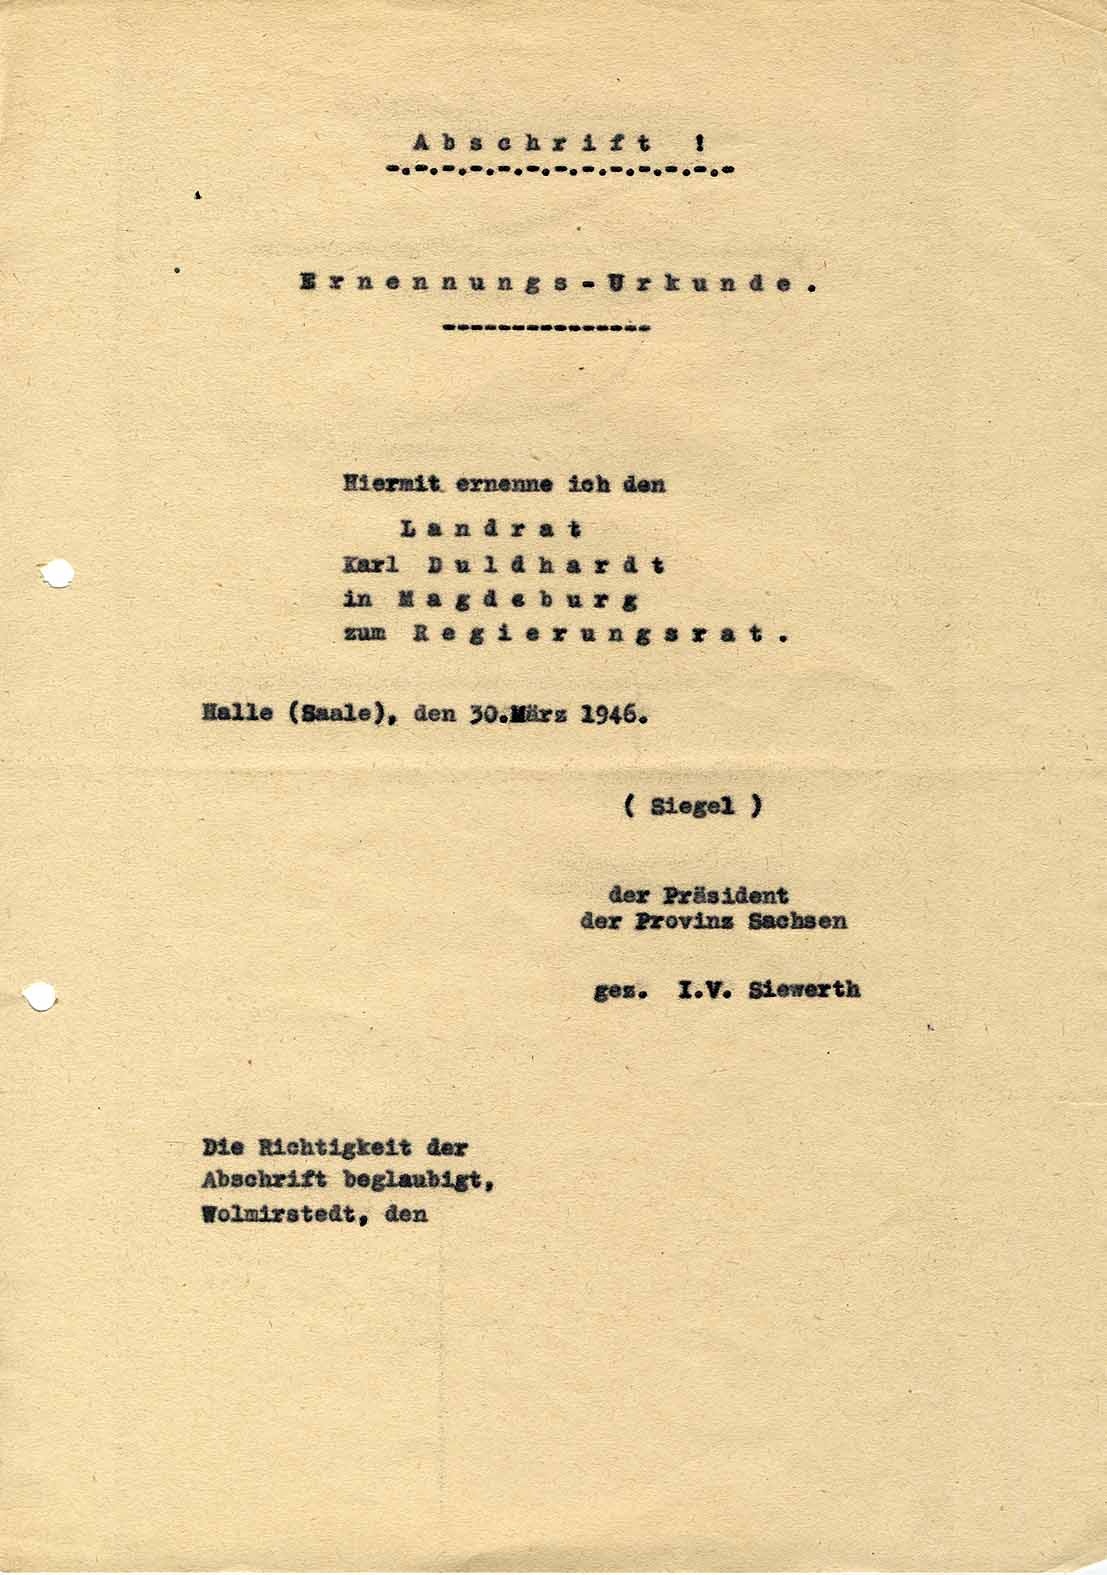 Abschrift Ernennungsurkunde von Karl Duldhardt zum Regierungsrat (Museum Wolmirstedt RR-F)